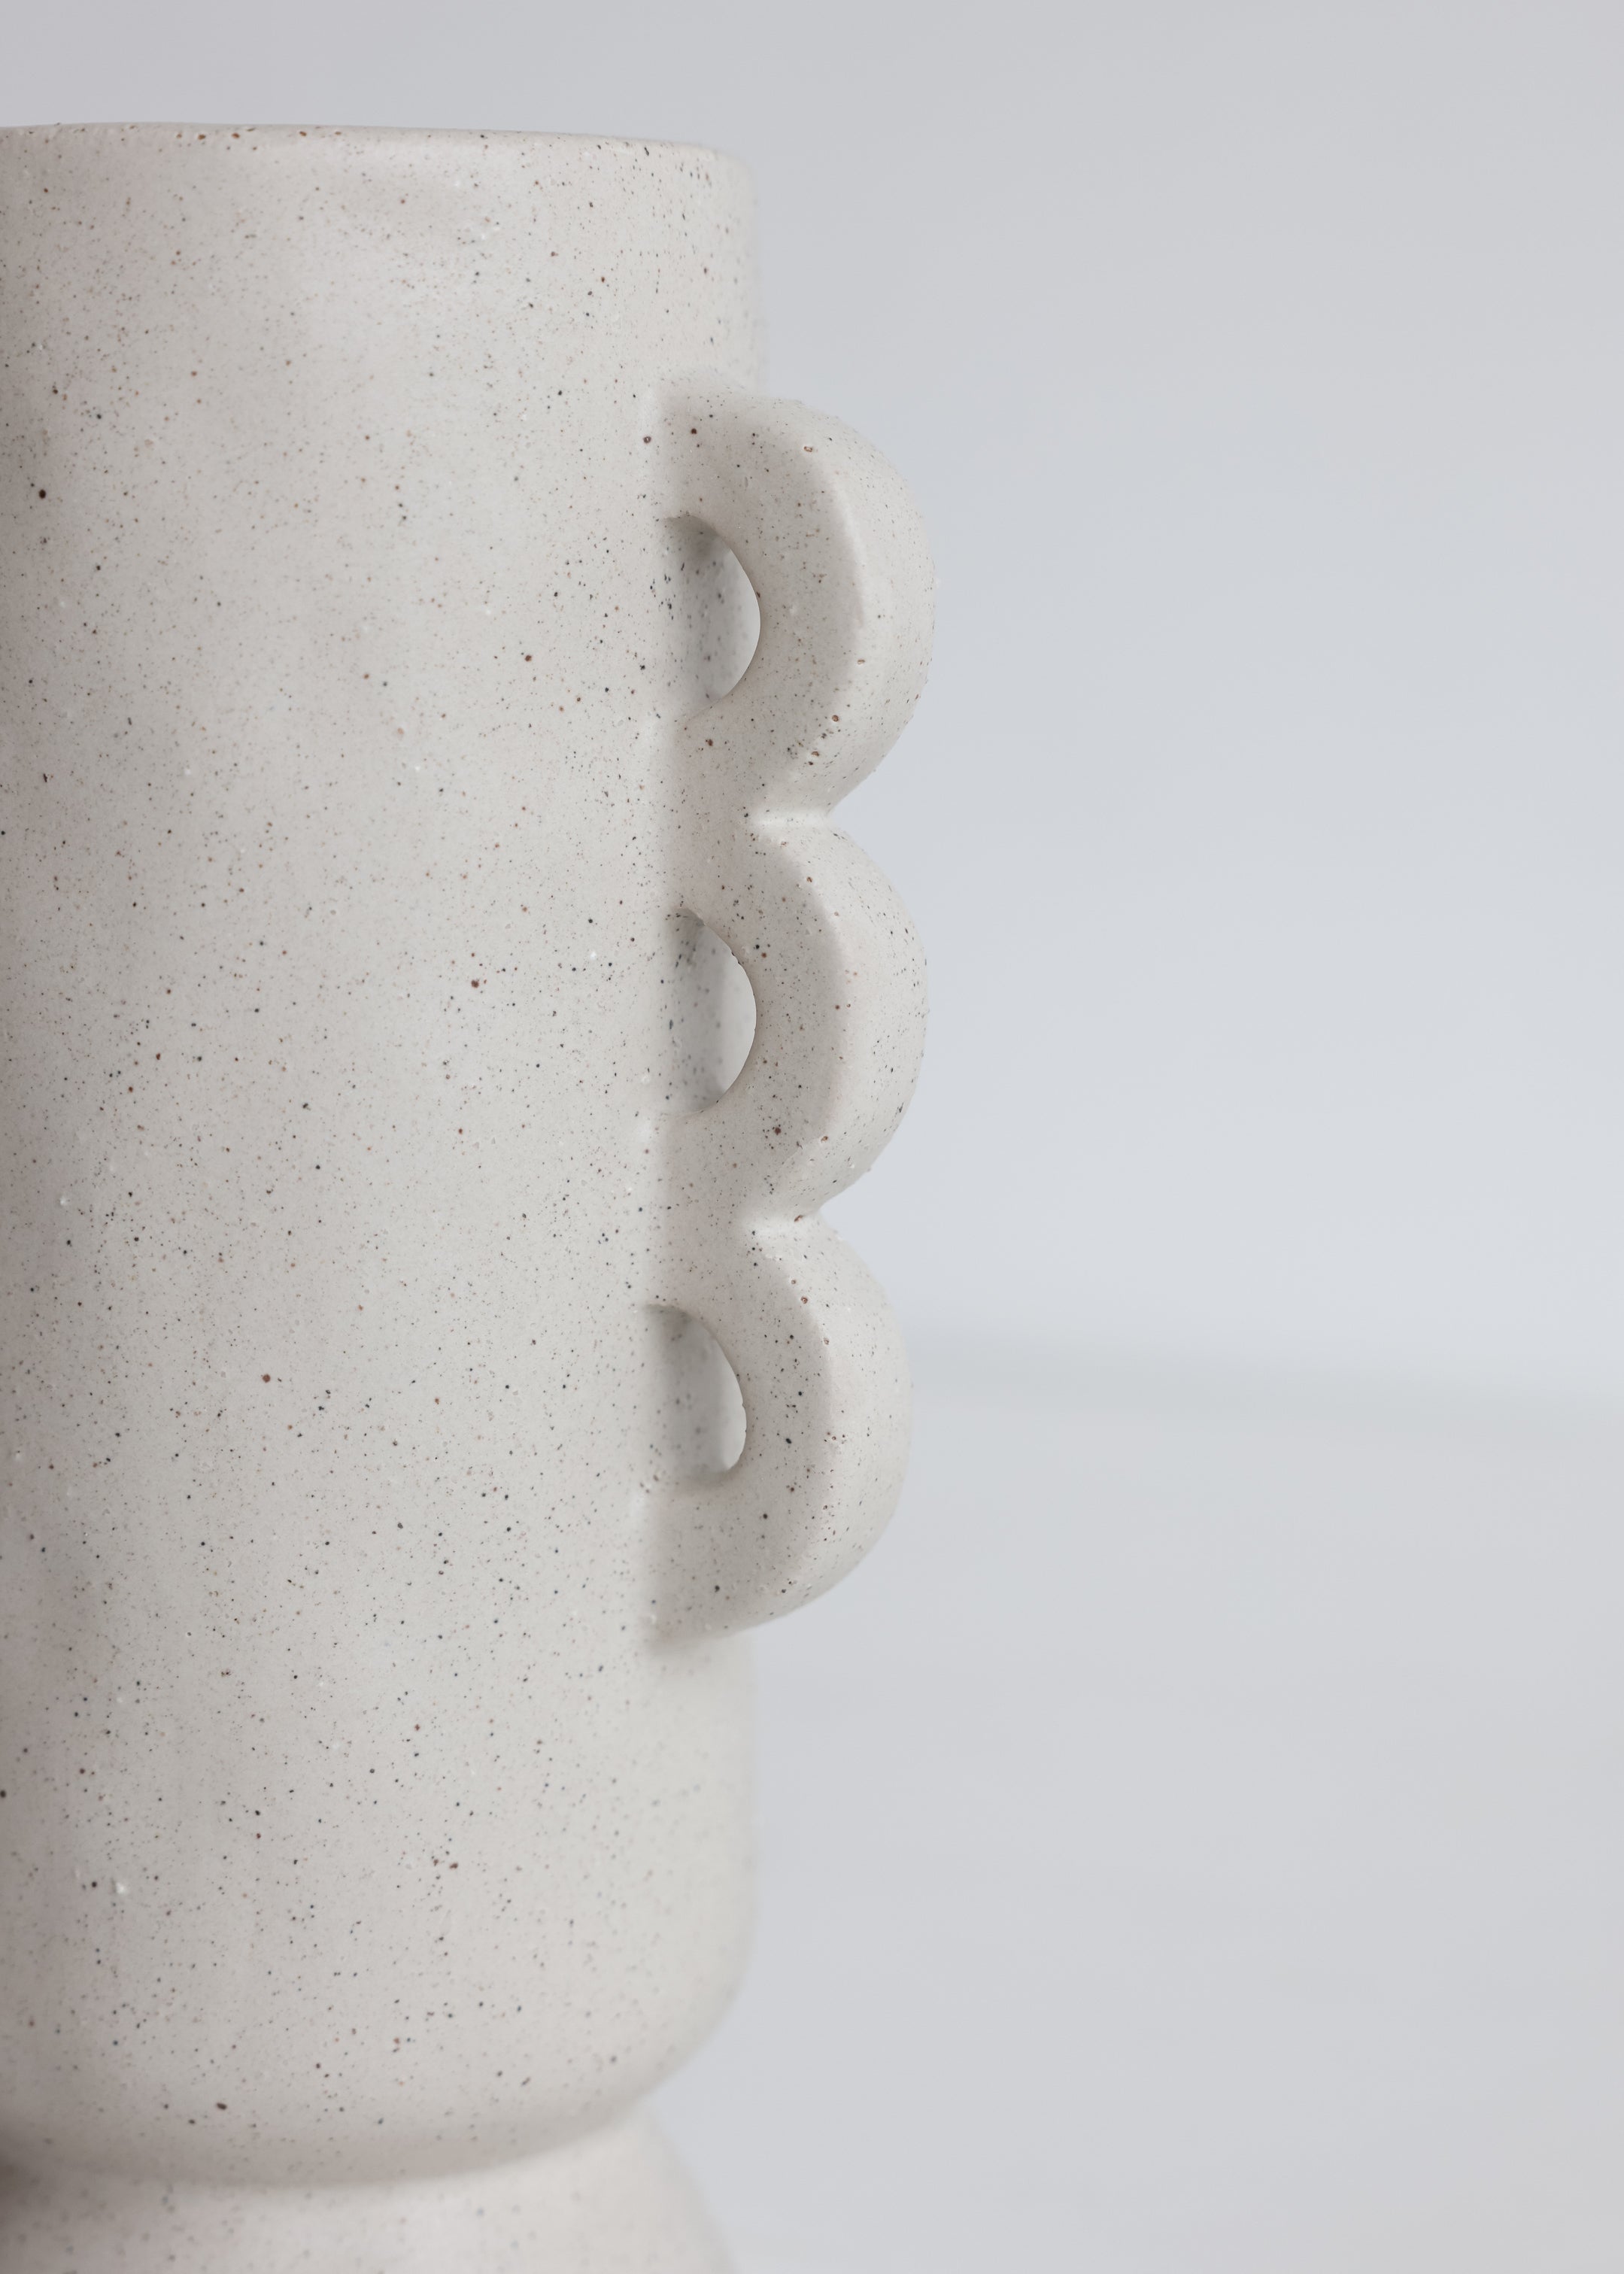 Wavy Stoneware Vase / Off White